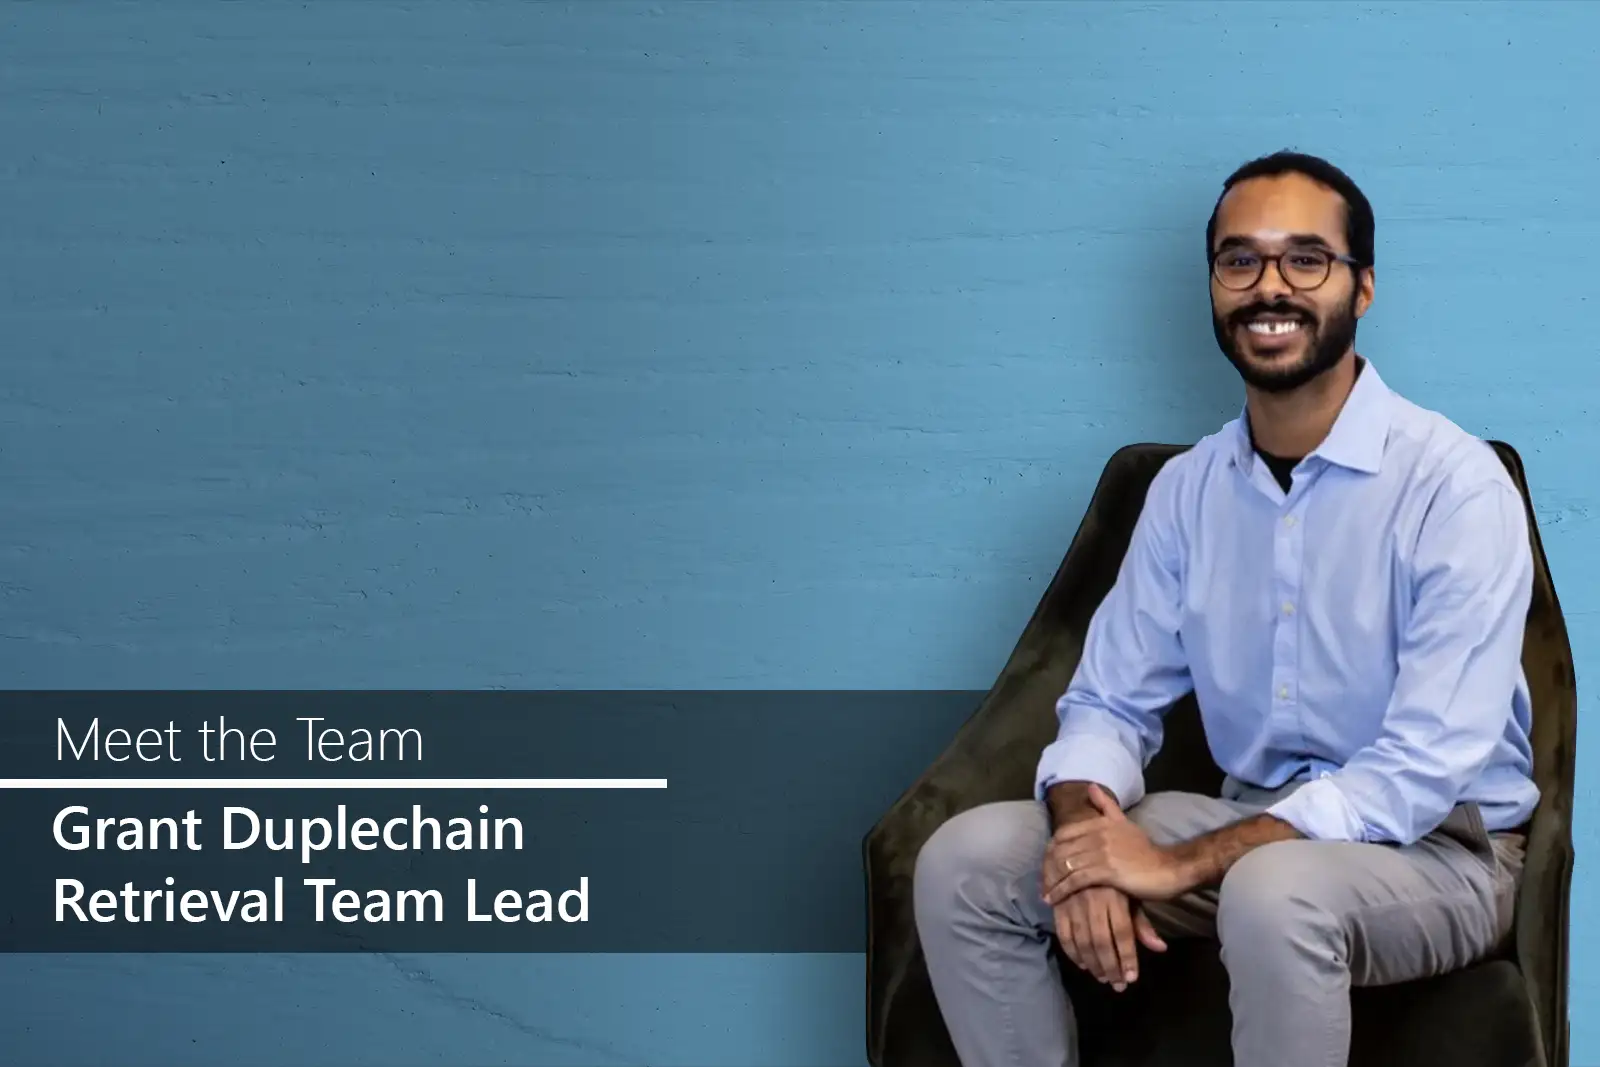 Meet the Team - Grant Duplechain